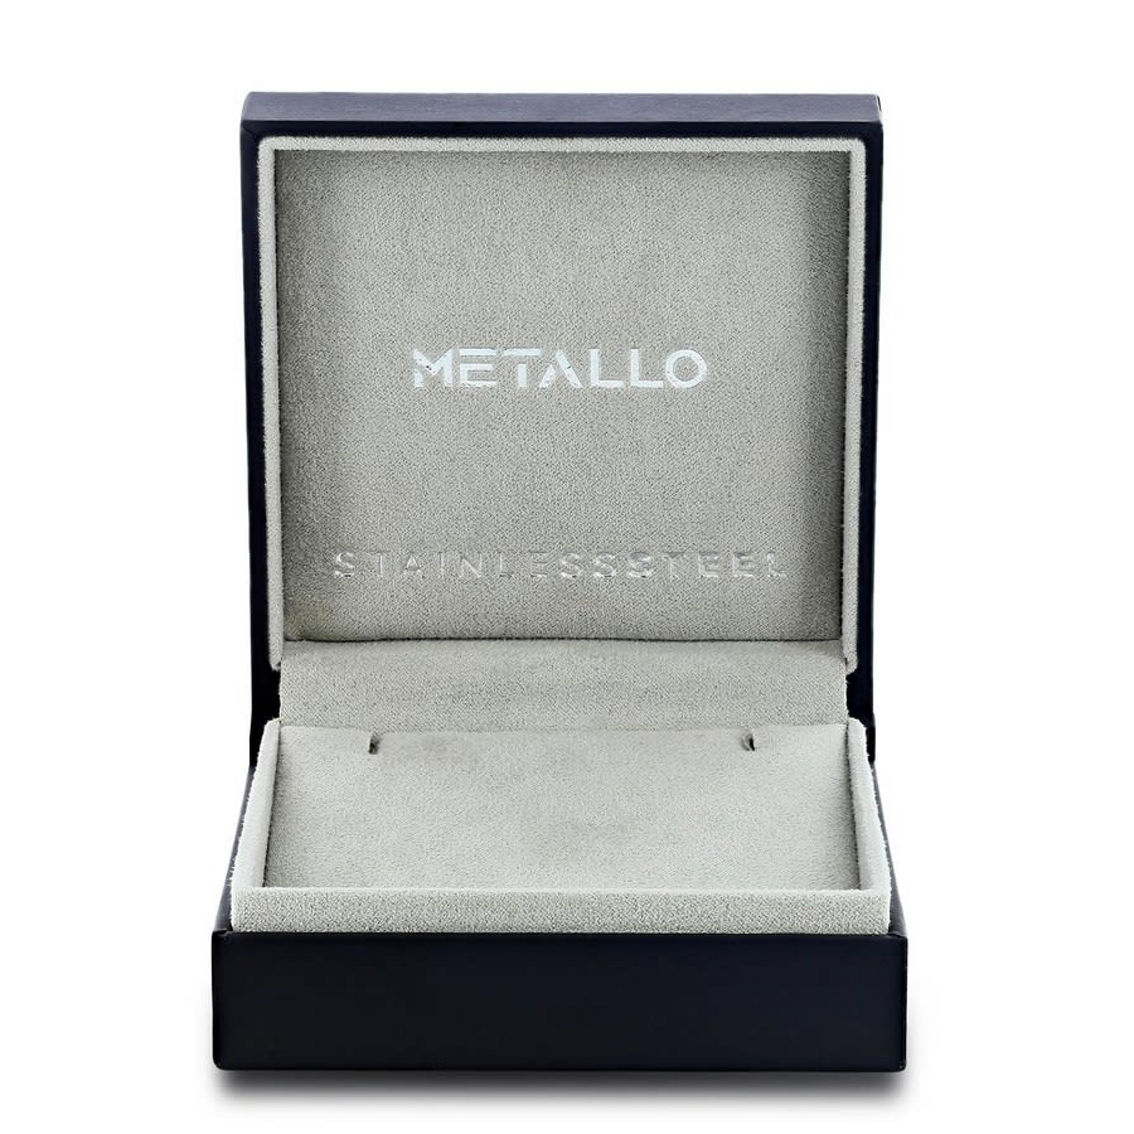 Metallo Stainless Steel Genuine Tiger Eye Beads Skull Bracelet - Gold Plated - Image 4 of 4